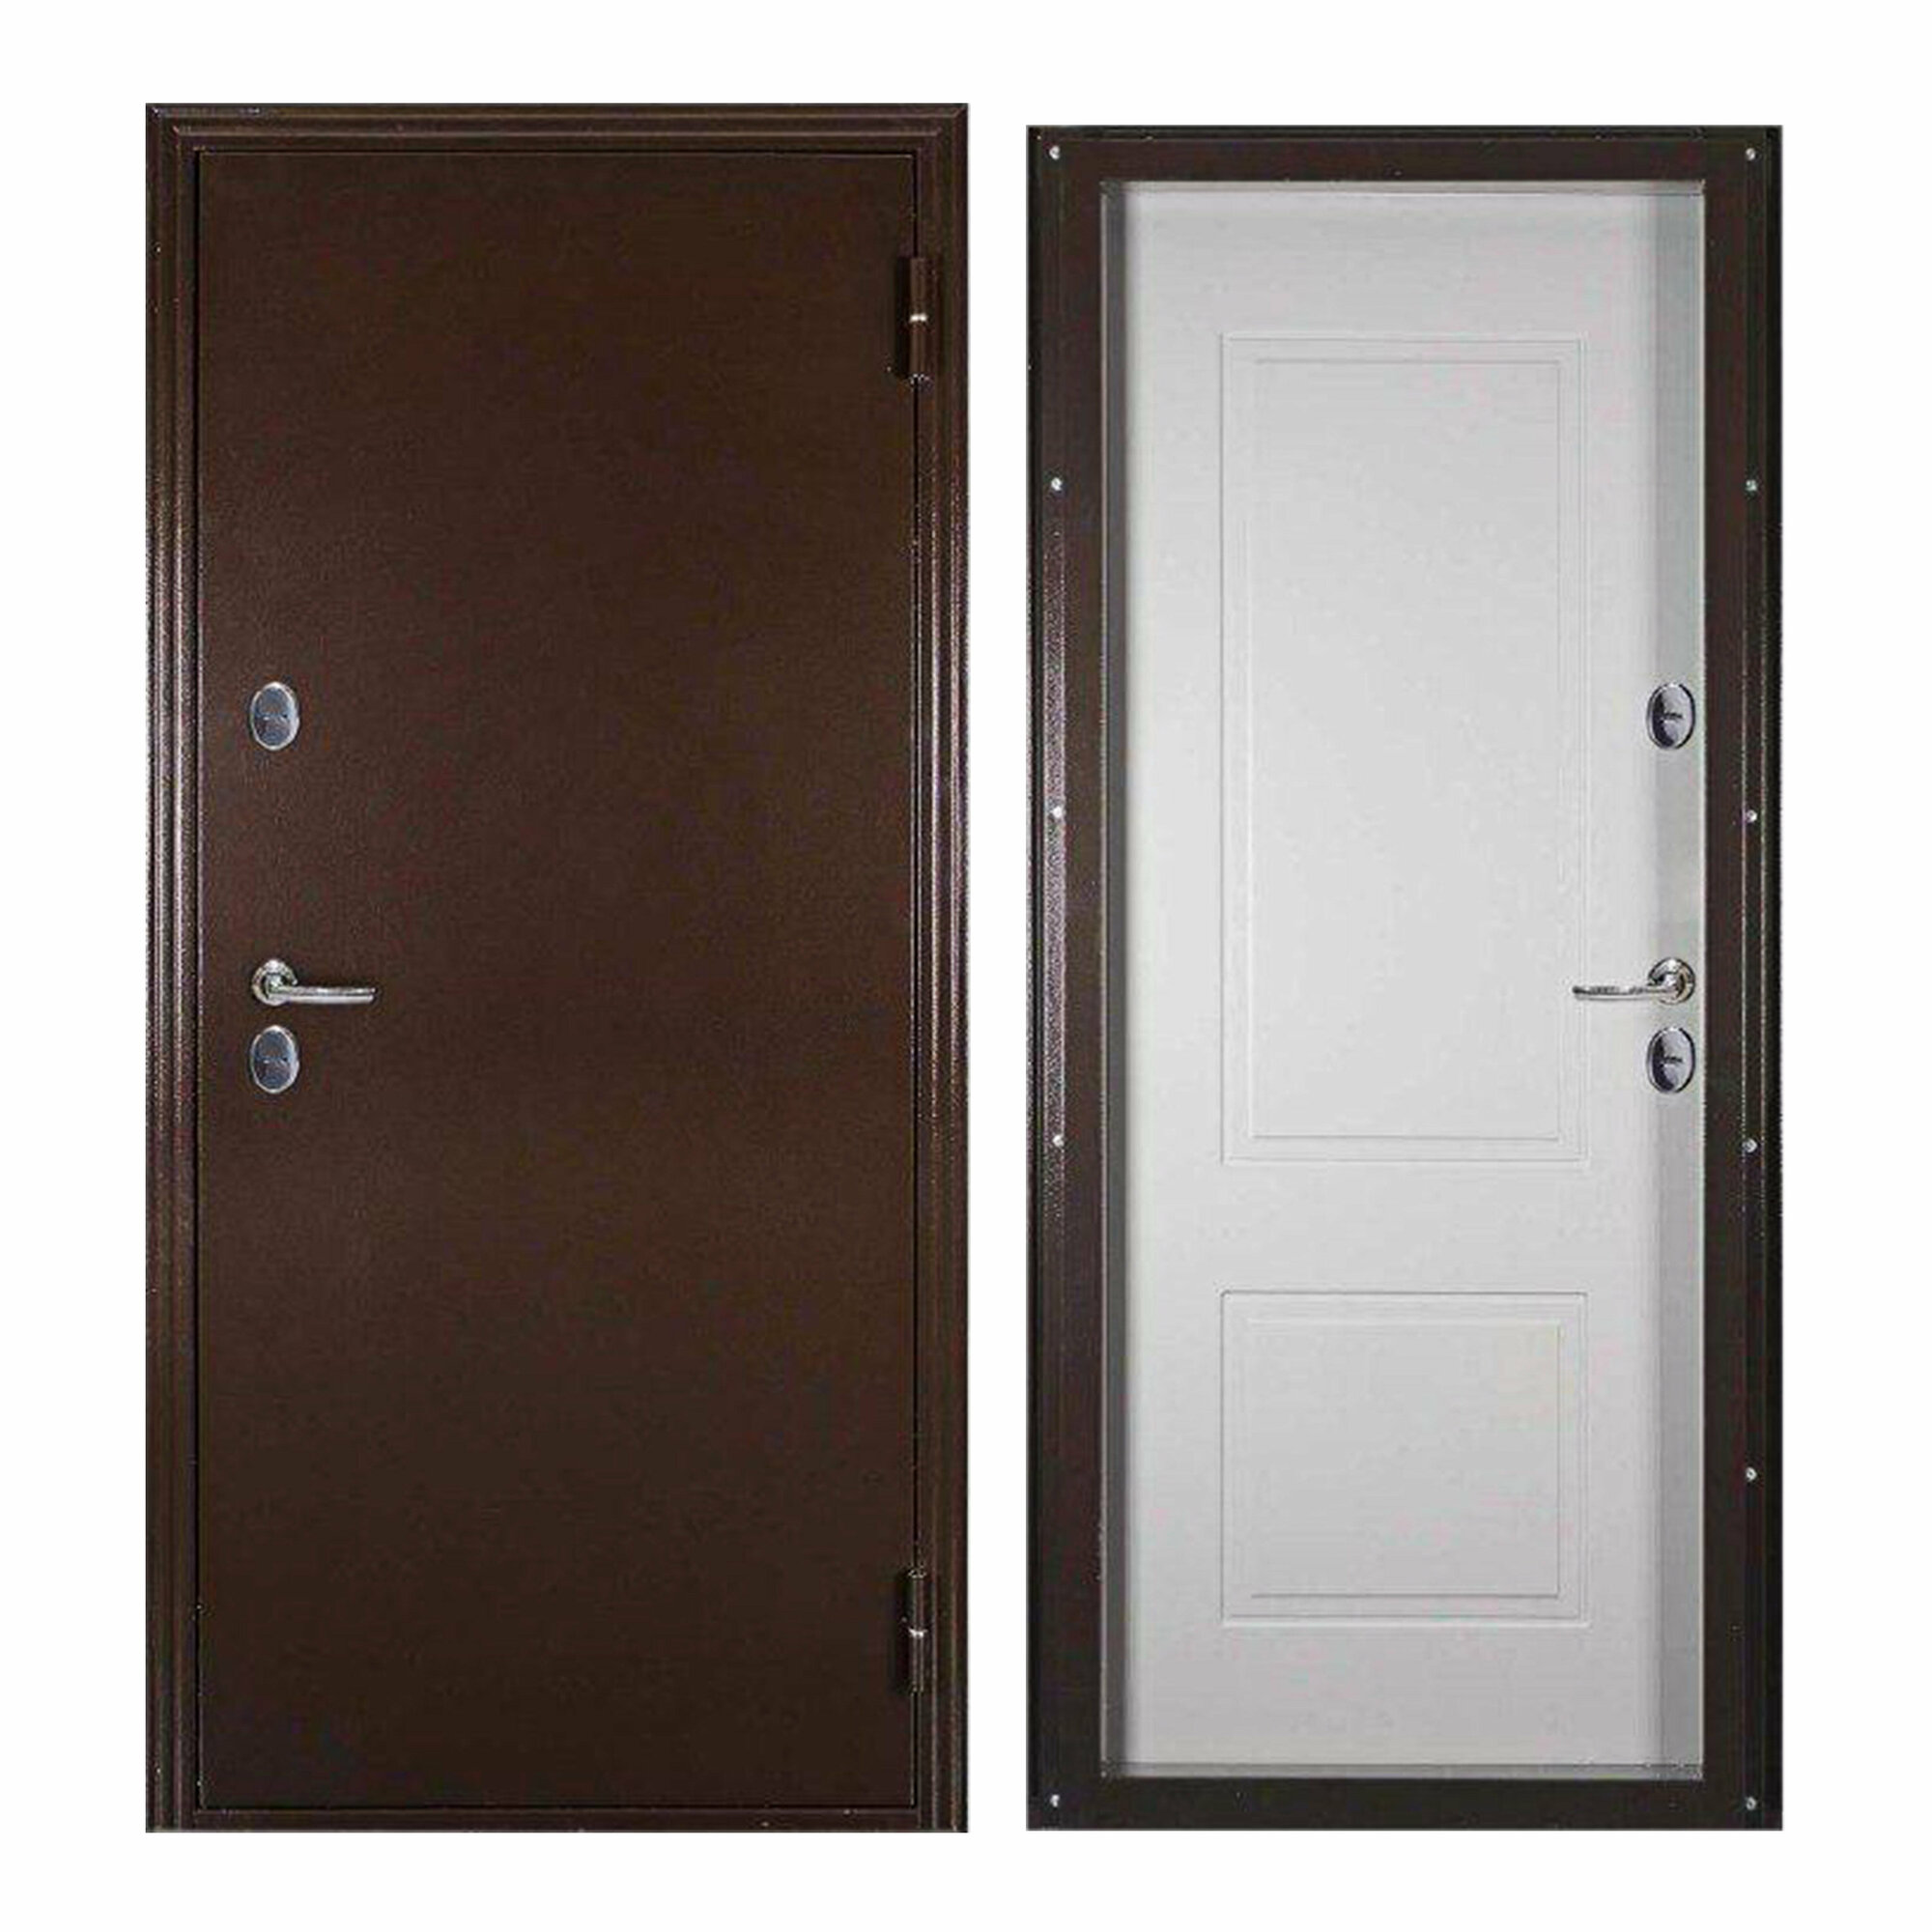 Дверь входная Megi Doors для дома Термо Лайт 970х2050 правый терморазрыв тепло-шумоизоляция антикоррозийная защита коричневый/белый